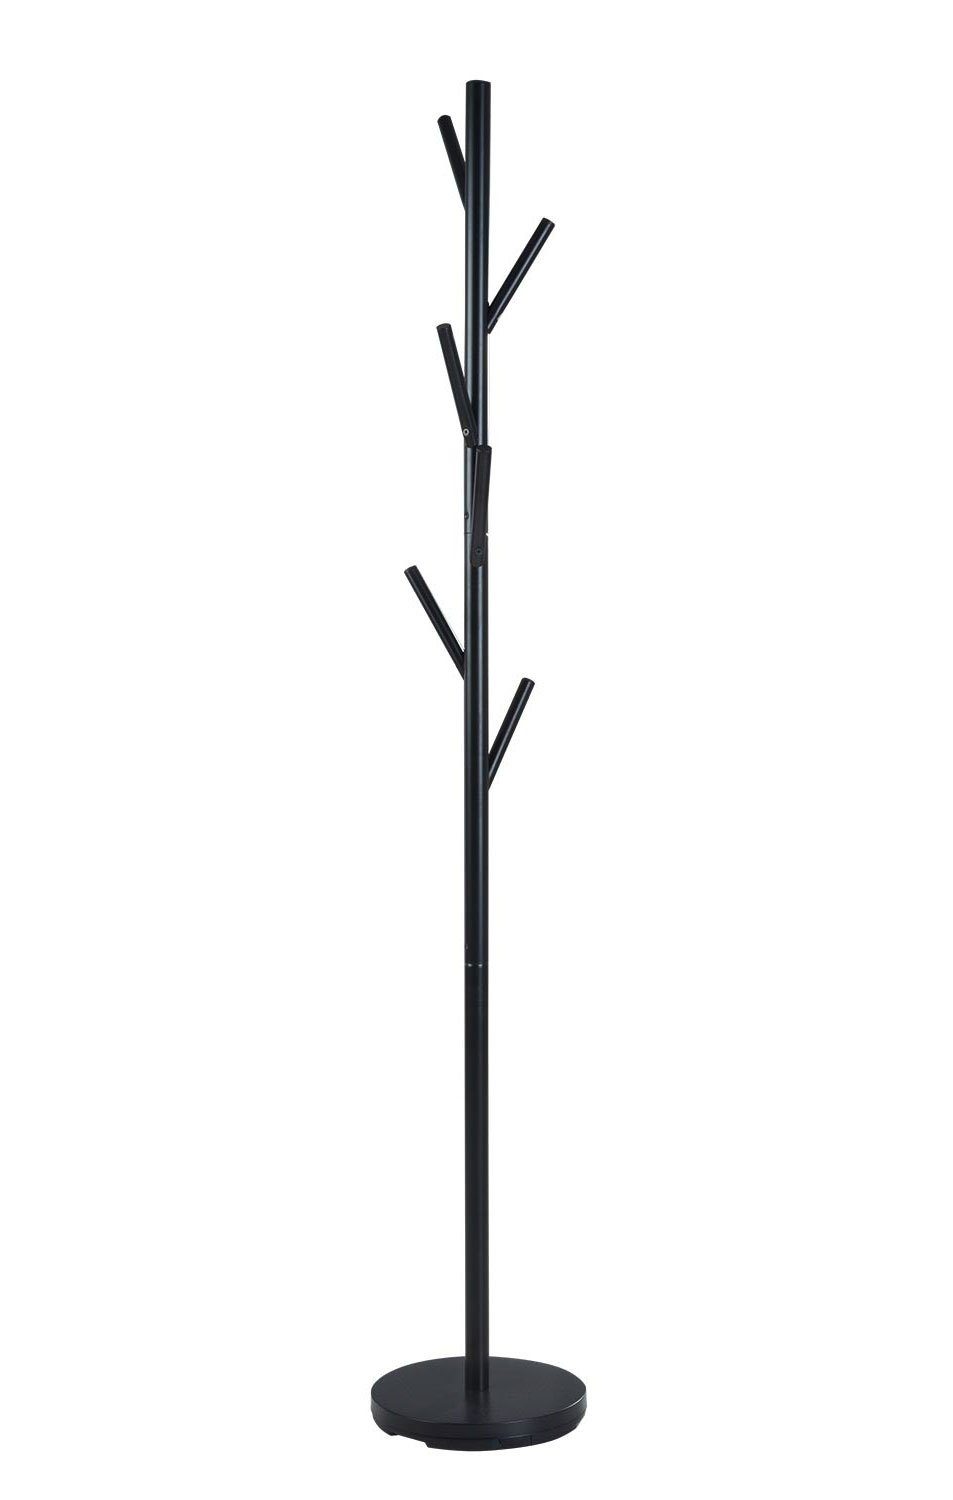 Home4You Kleiderständer Metall, Schwarz lackiert, Höhe 170 cm, Ø 28 cm, mit 5 Kleiderhaken